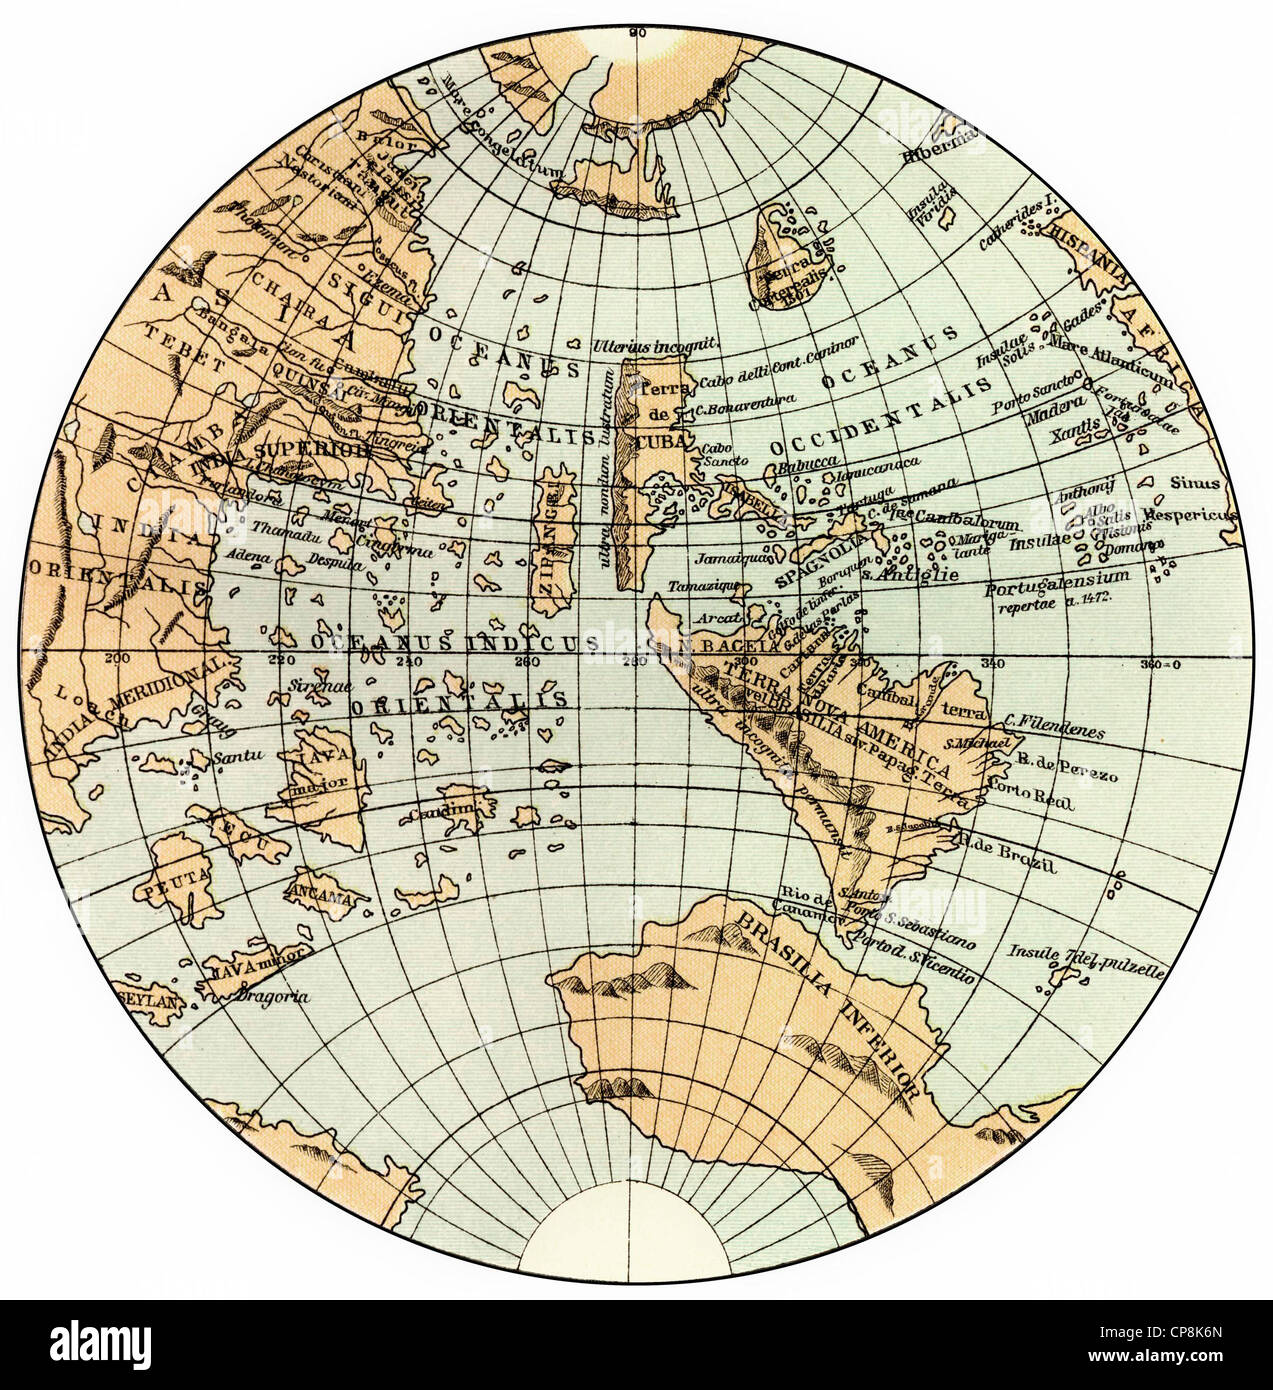 Globe by johannes schoener Banque de photographies et d'images à haute résolution - Alamy